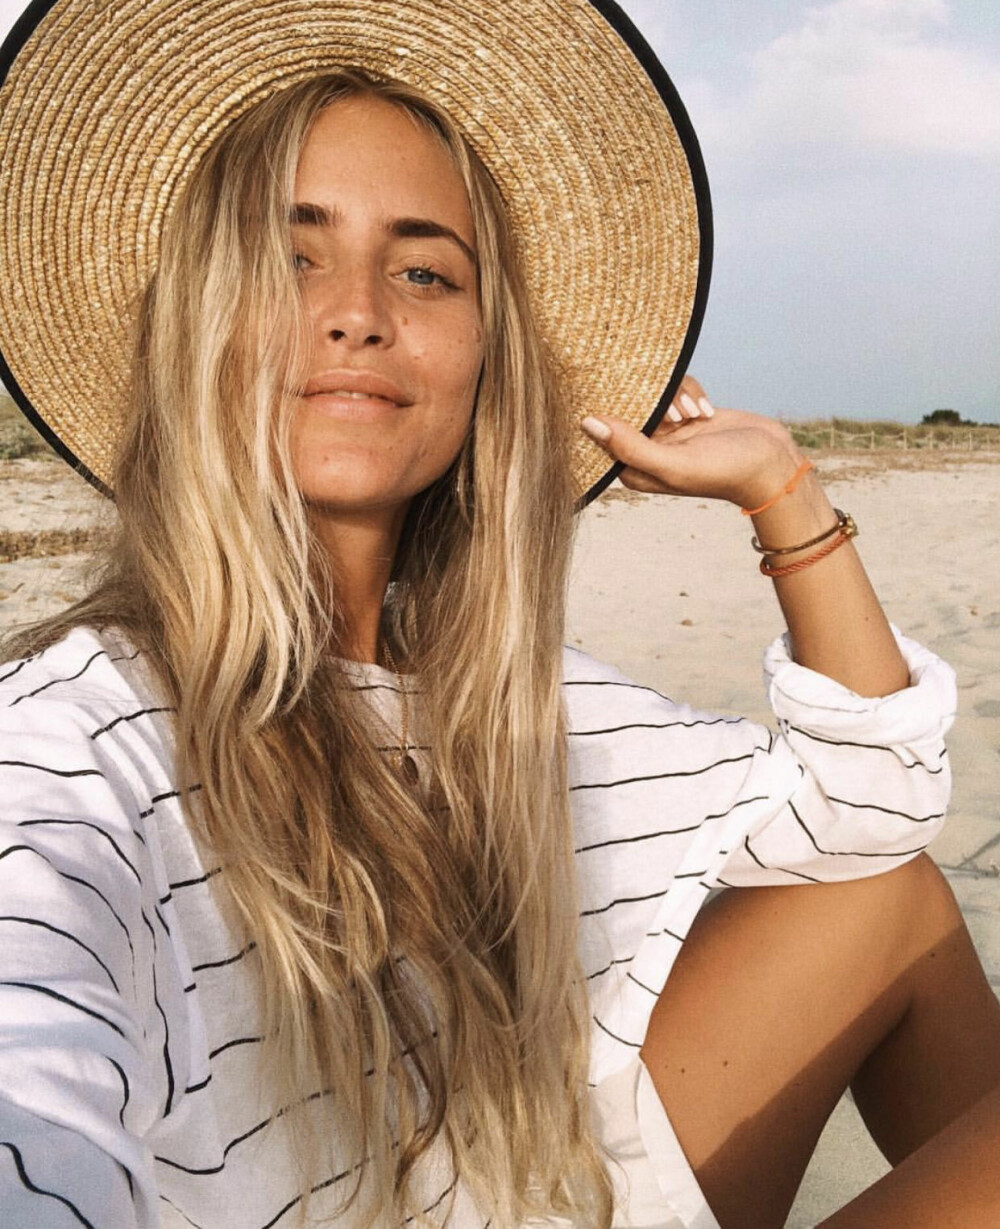 Jani Olsson Delér deler av sin hverdag. Her er hun med sommer, strand og stråhatt, skikkelig Ibiza-style.